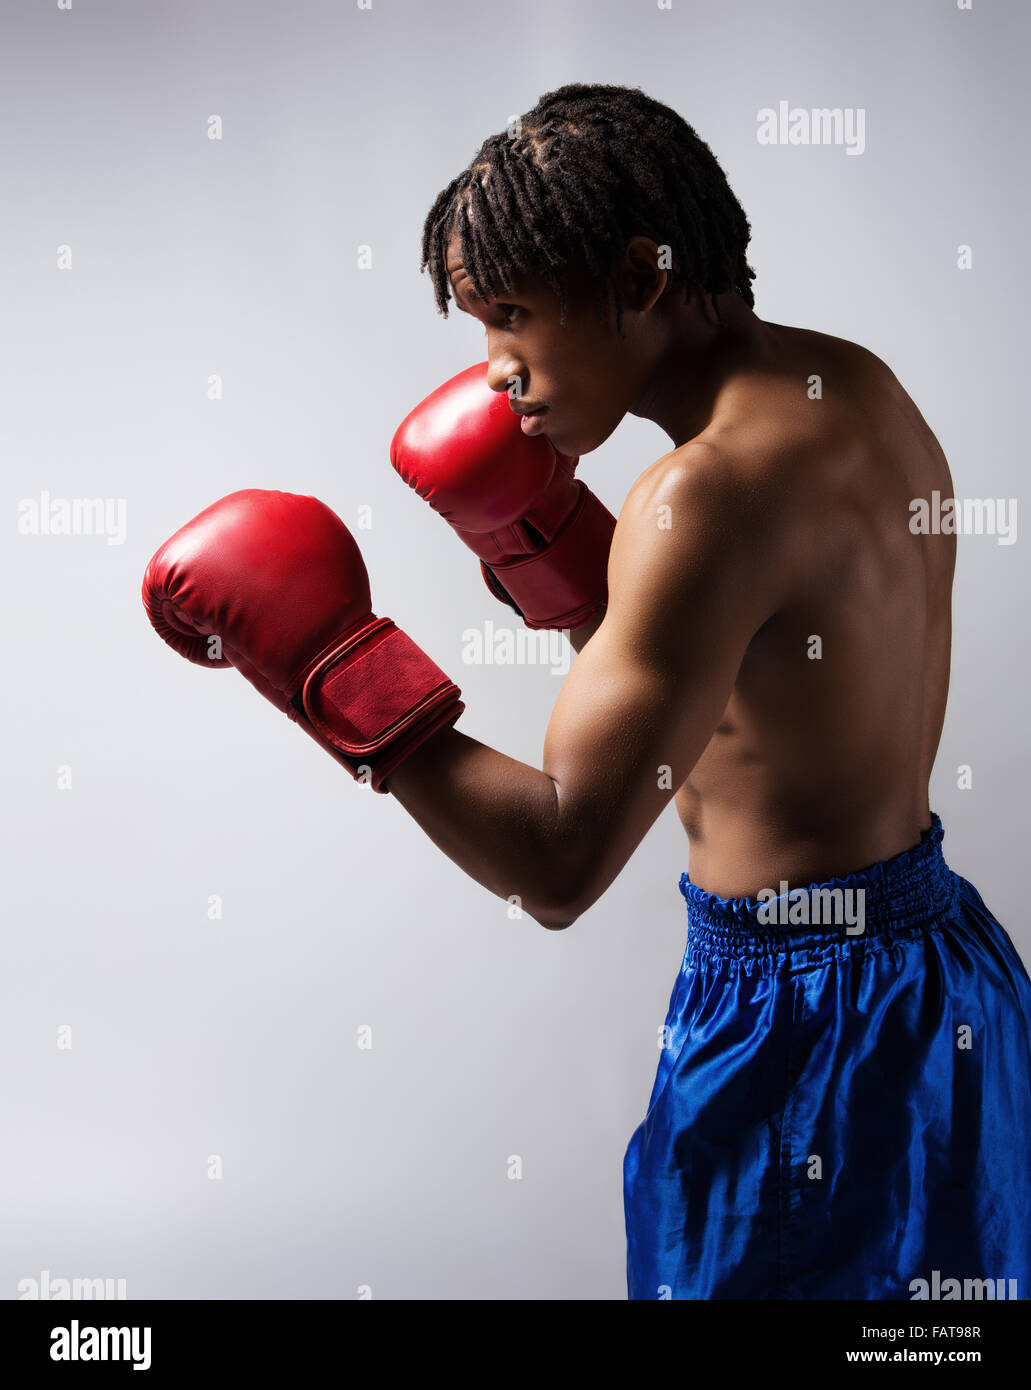 Junge muskulöse athletische männliche Boxer blaue Boxershorts und rote Boxhandschuhe. Stockfoto